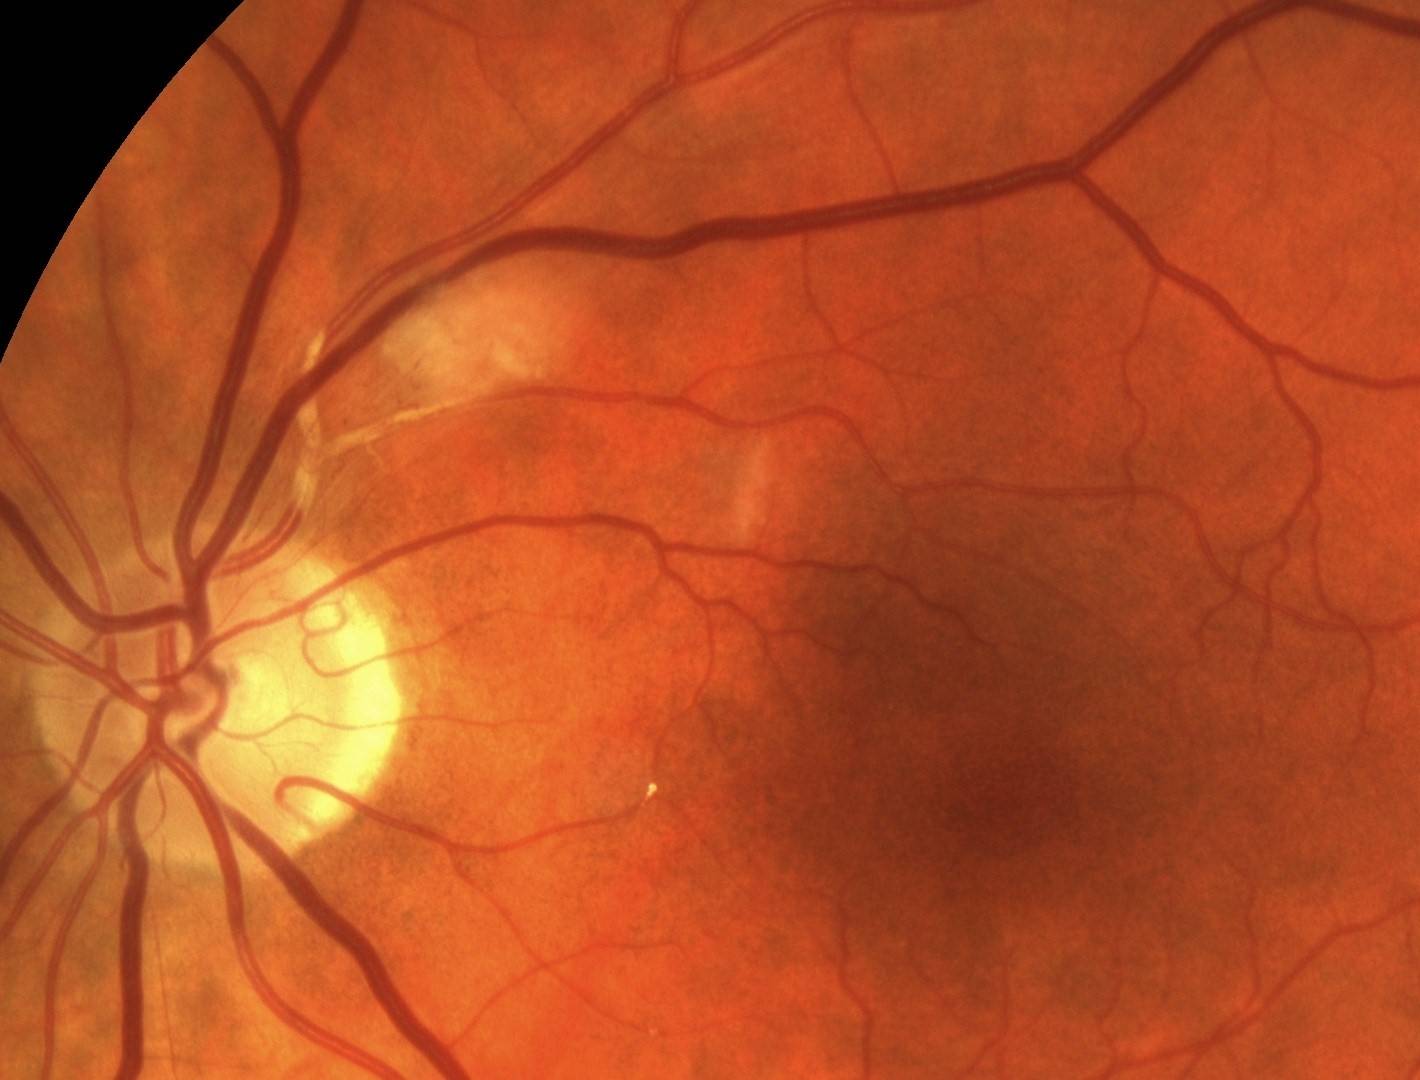 Диабетическая ретинопатия: виды, причины, симптомы, диагностика и лечение, последствия и меры профилактики + фото